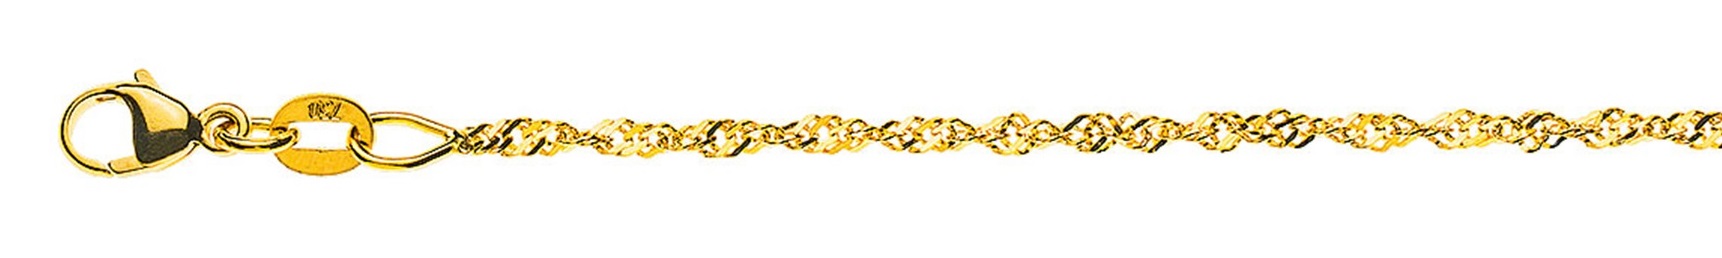 AURONOS Prestige Halskette Gelbgold 18K Singapurkette 45cm 1.5mm